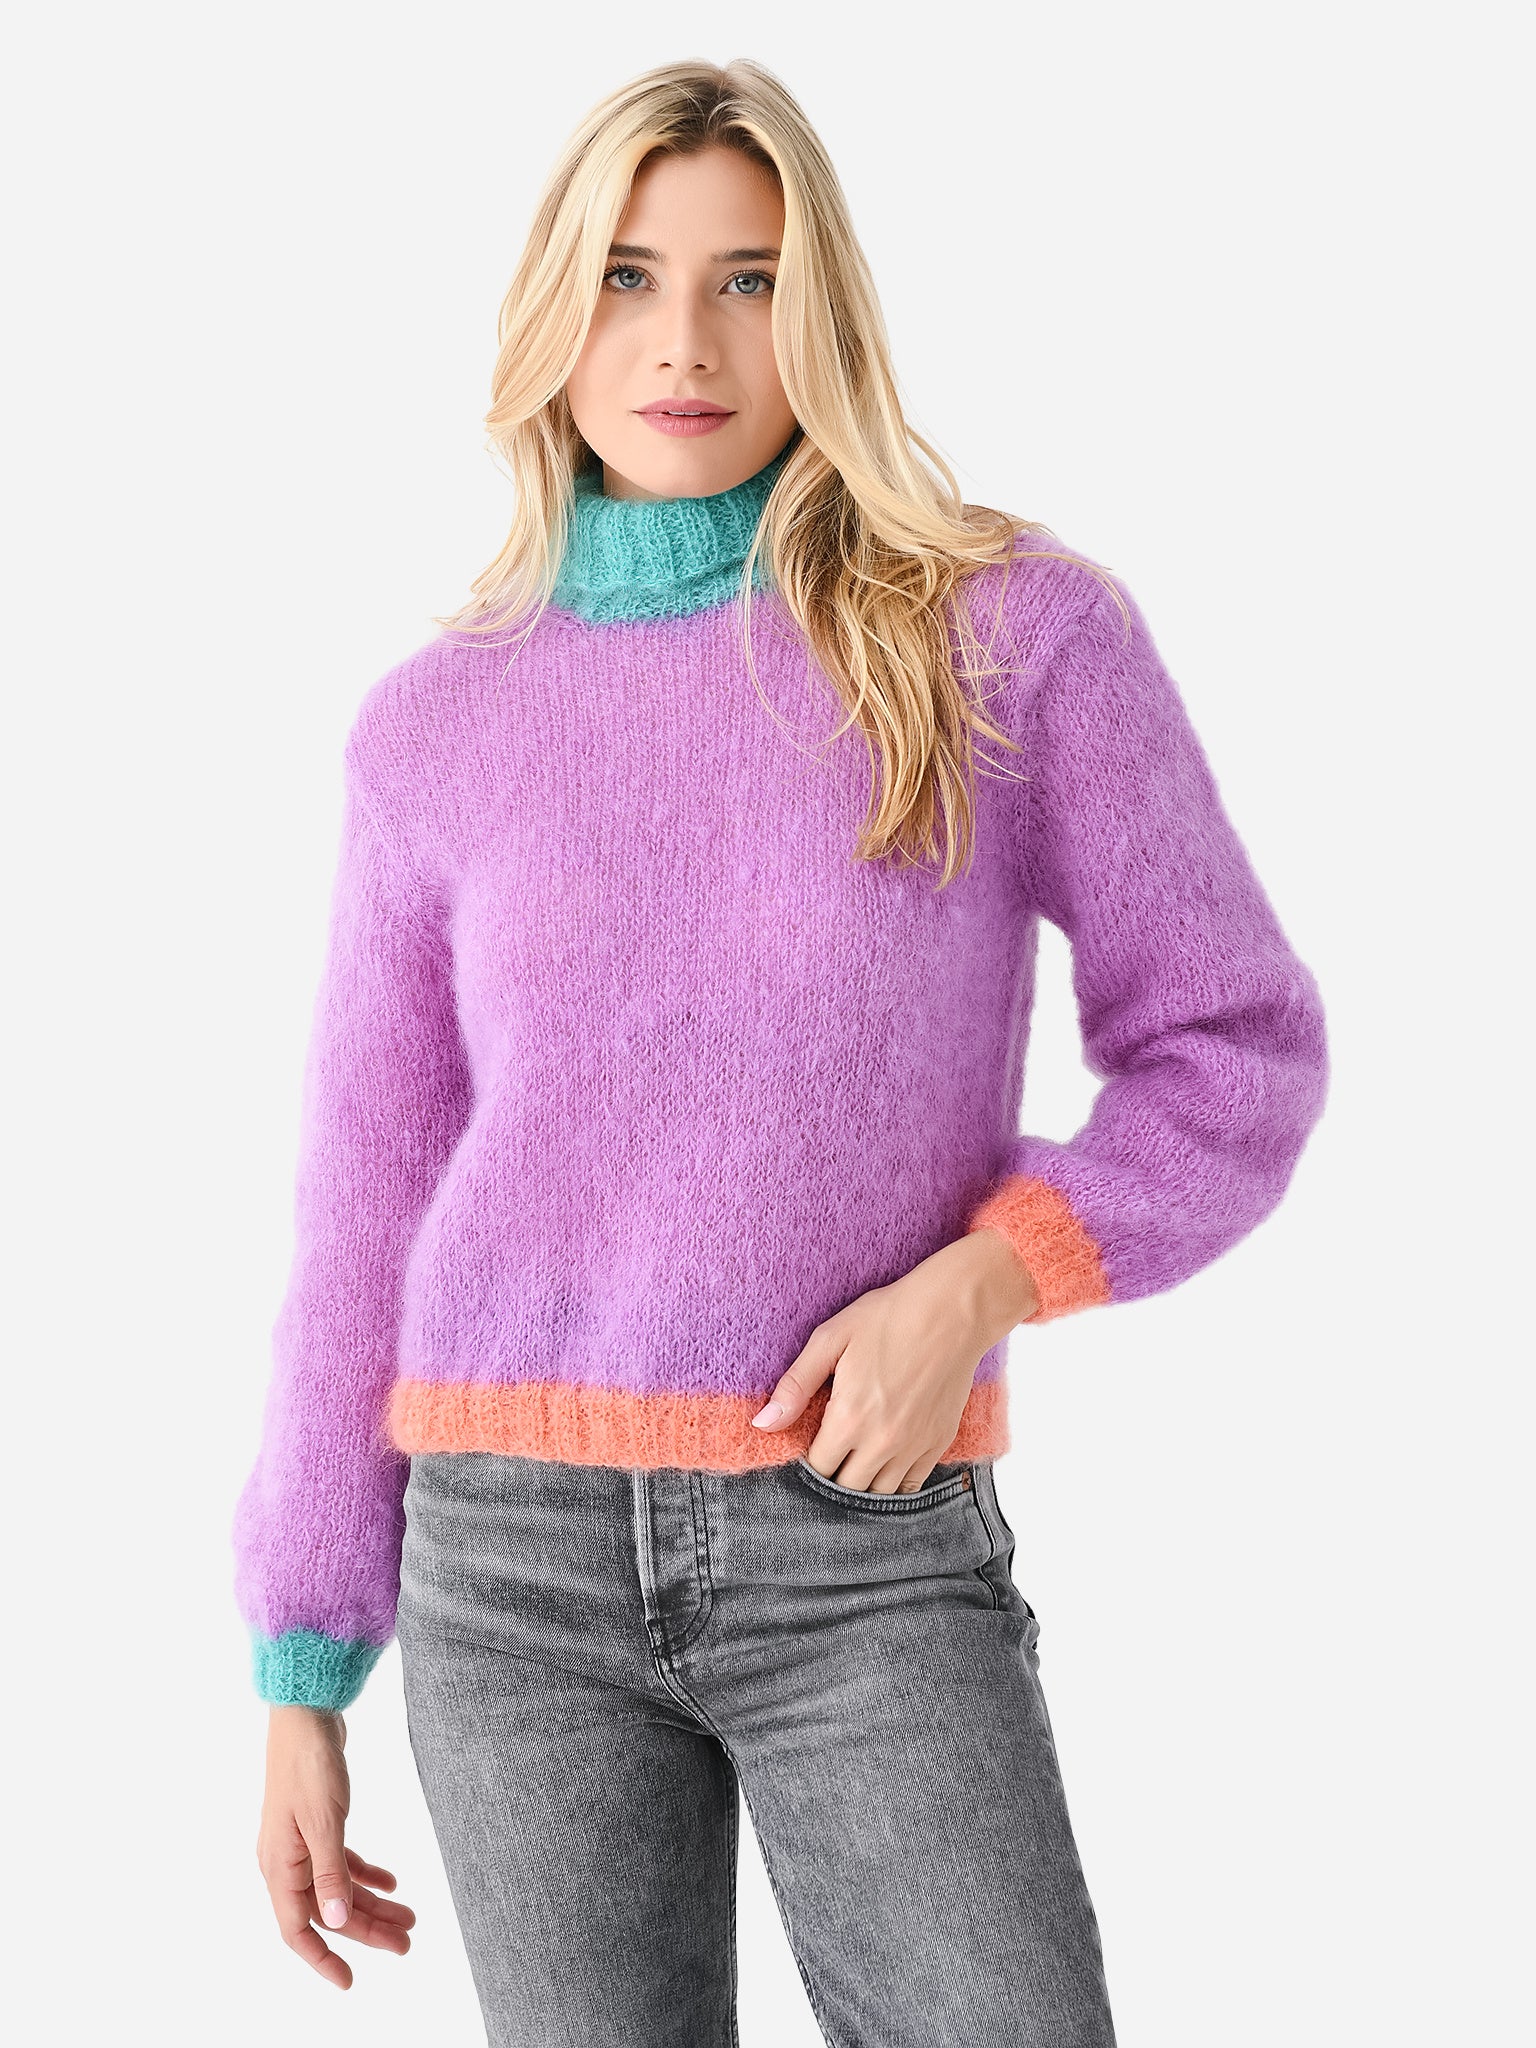 Rose Carmine Women's High Neck Colorblock Sweater – saintbernard.com